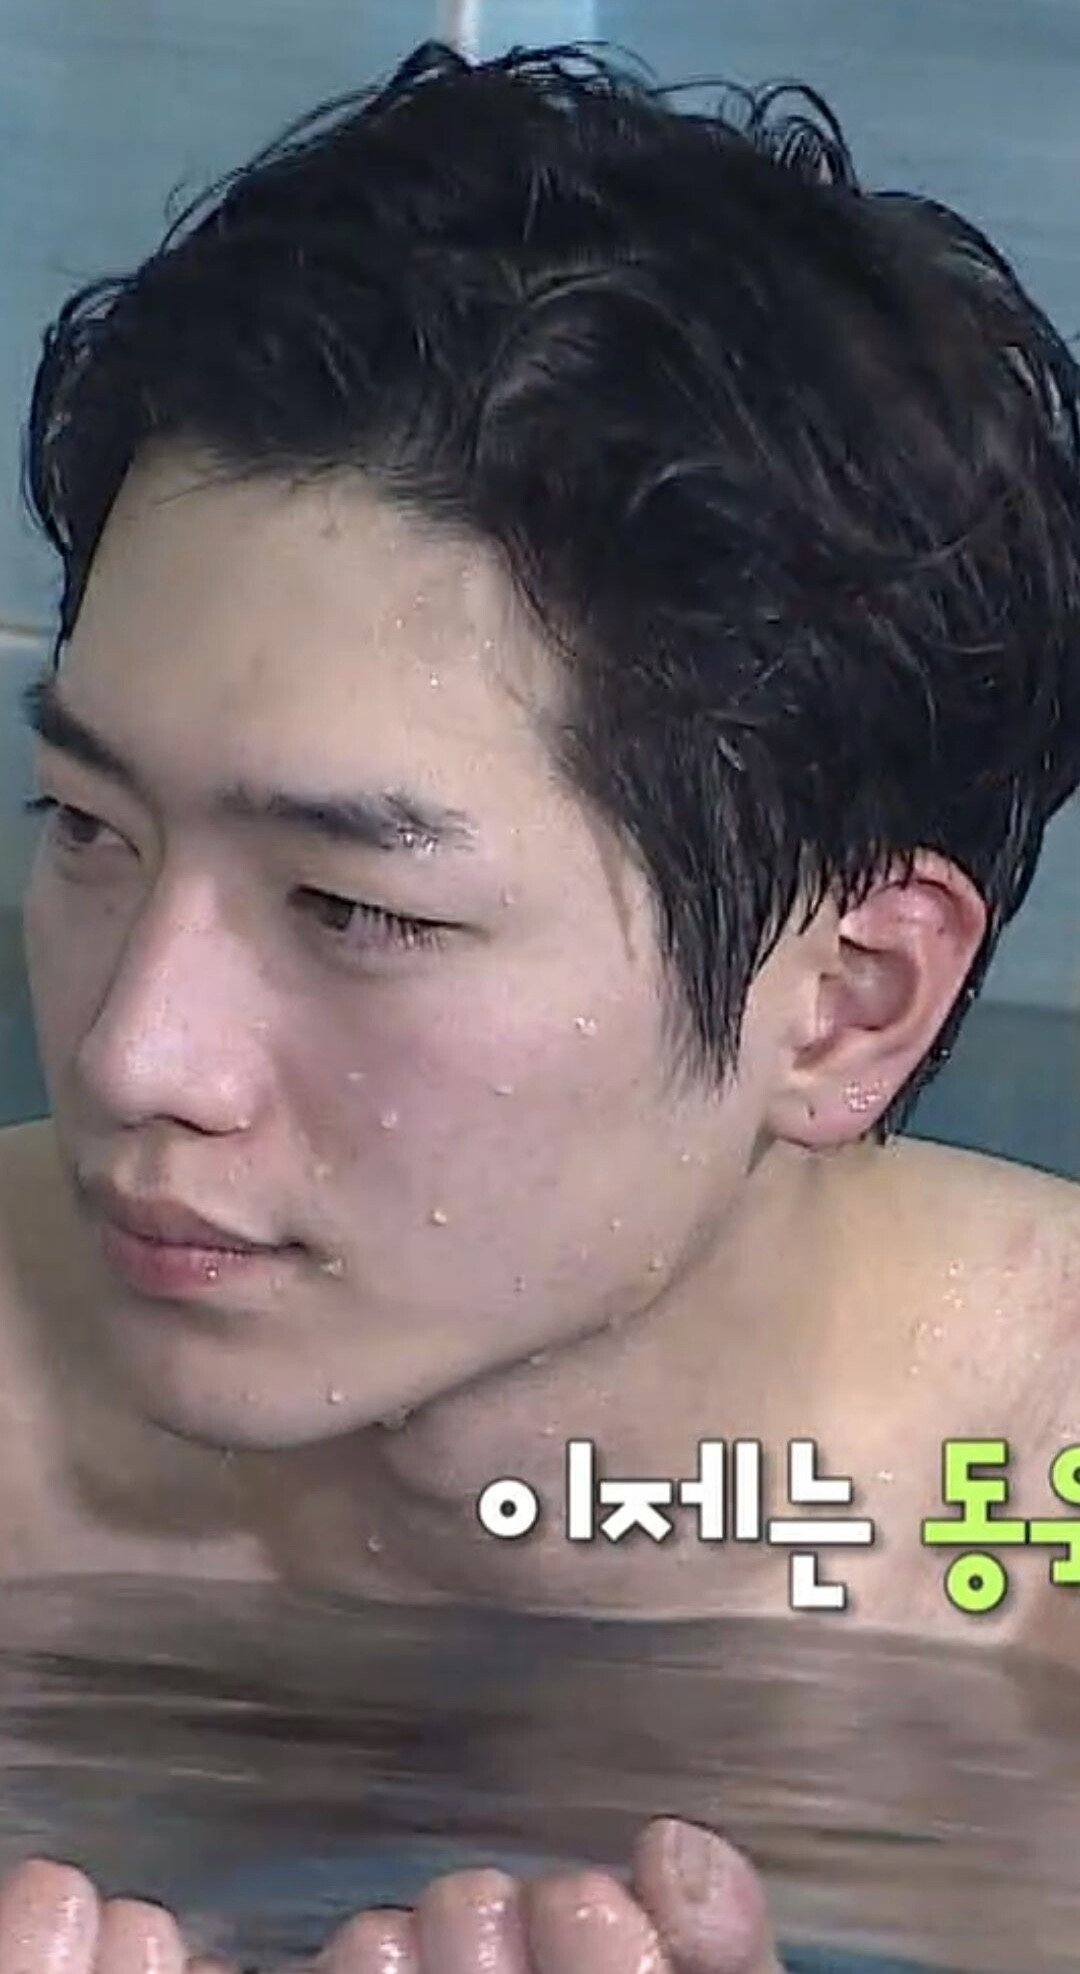 Shocking Seo Kang Jun's bare face